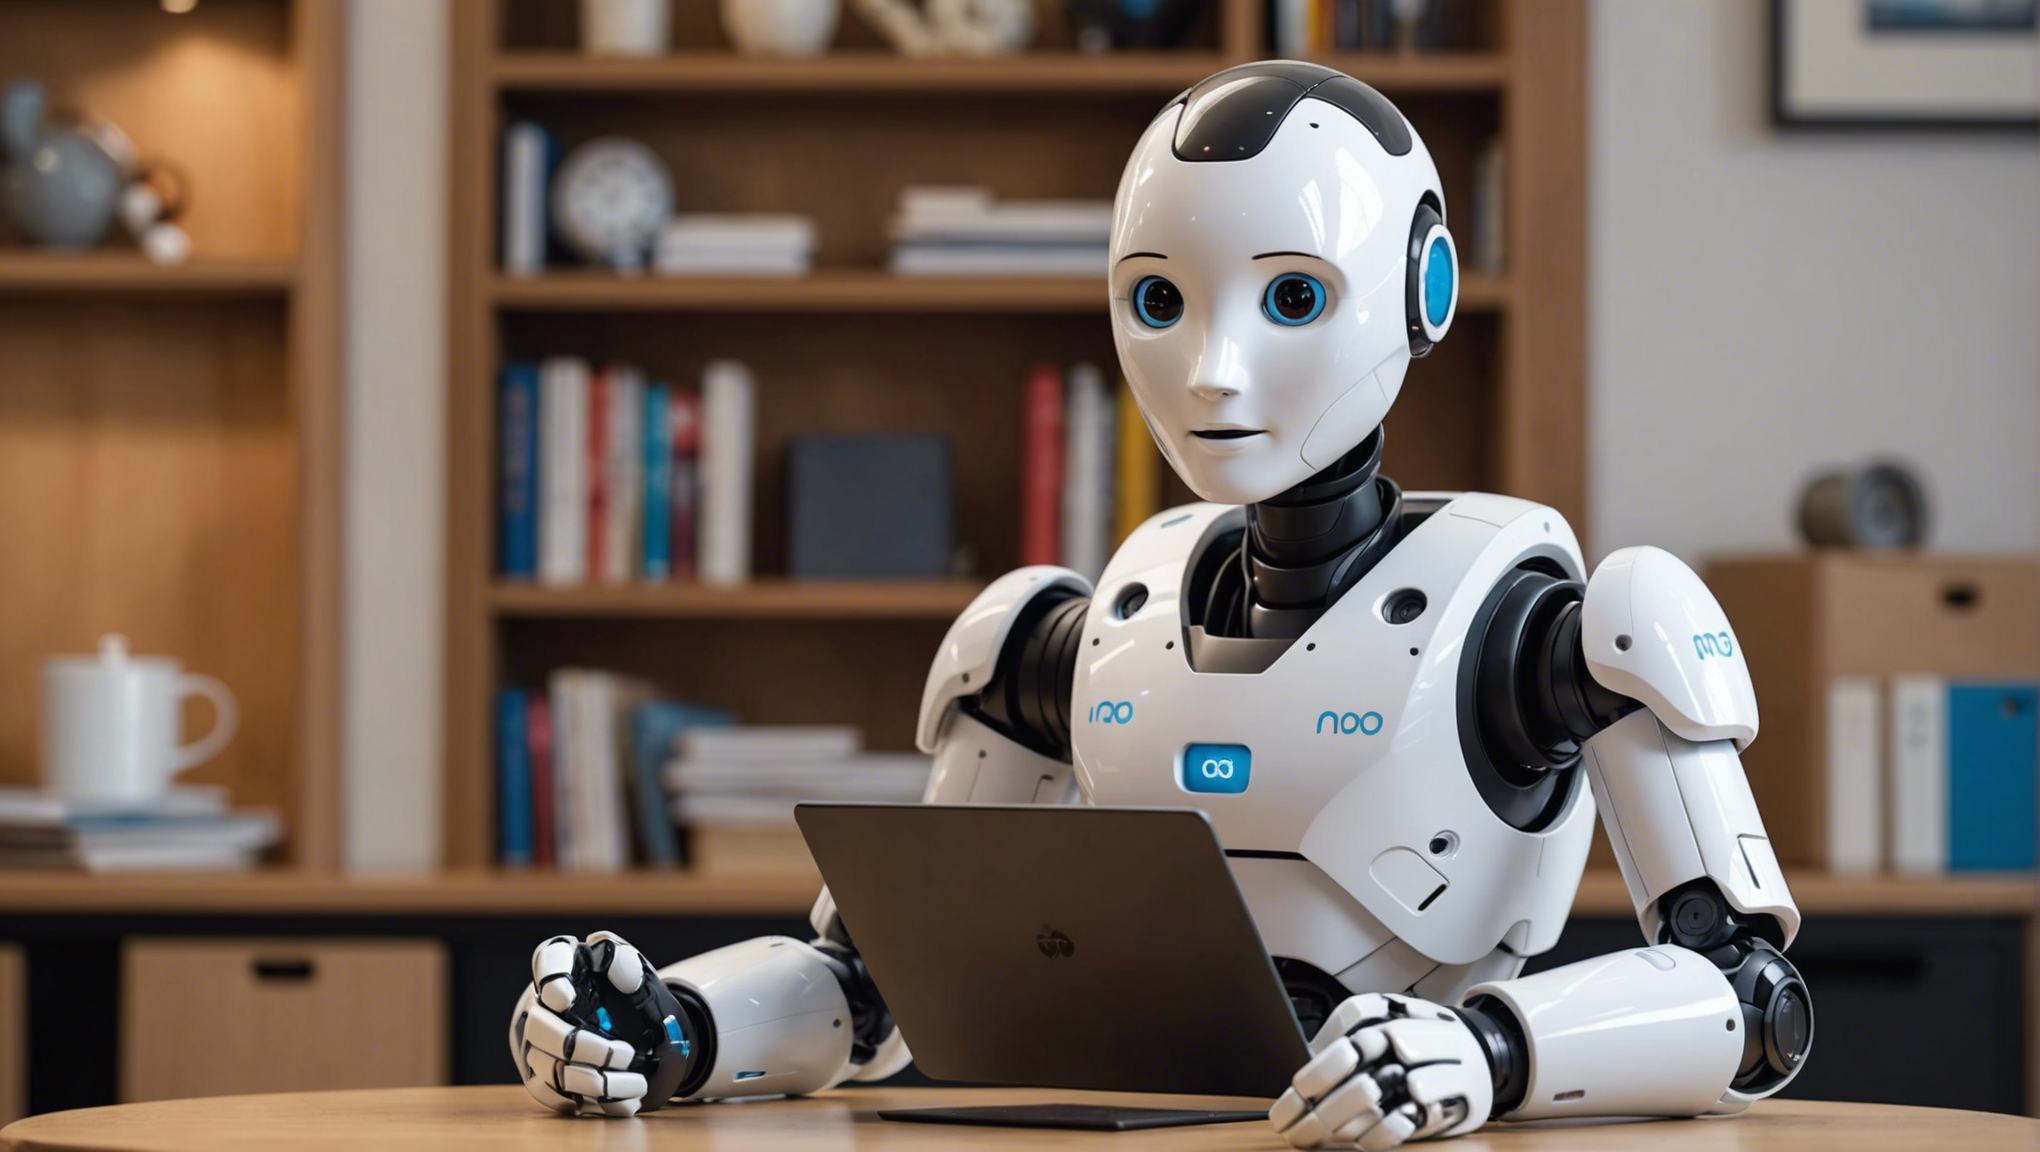 découvrez le nouveau nao next gen, un robot humanoïde programmable disponible sur génération robots. un concentré de technologie au service de l'innovation et de l'apprentissage.